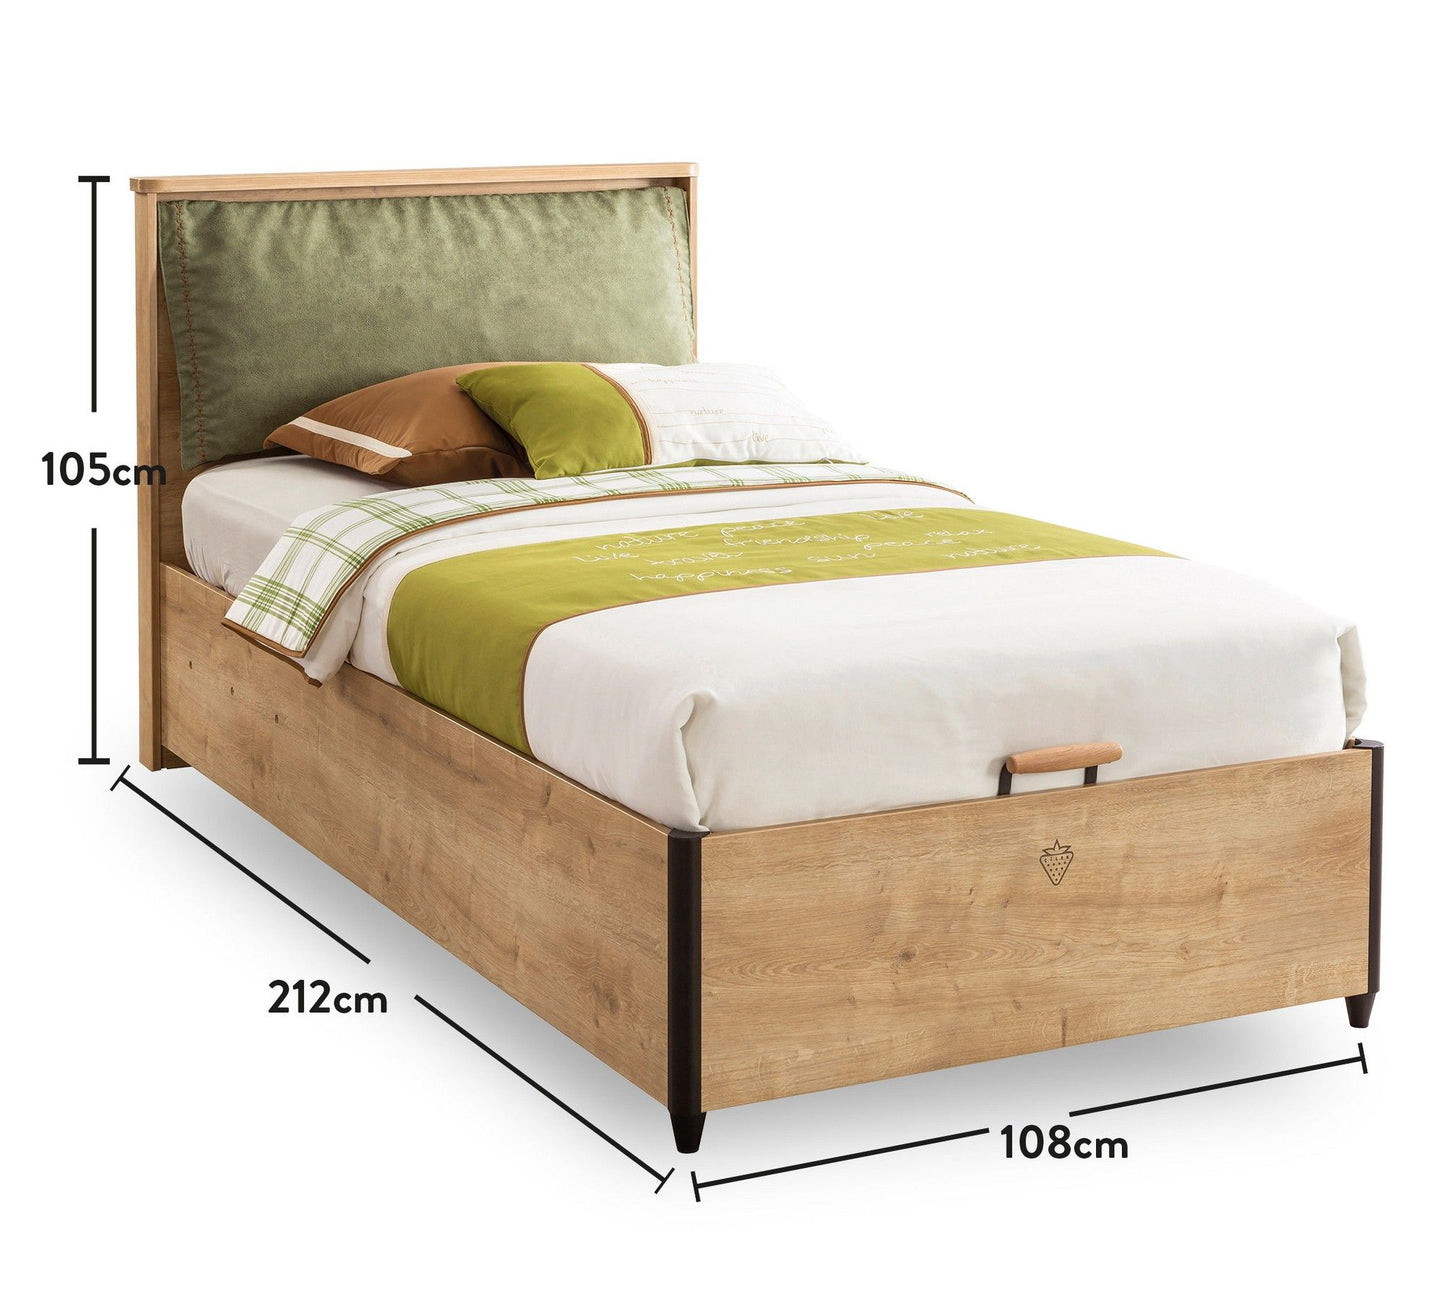 Mokka seng med bund (100X200) - Enkeltseng